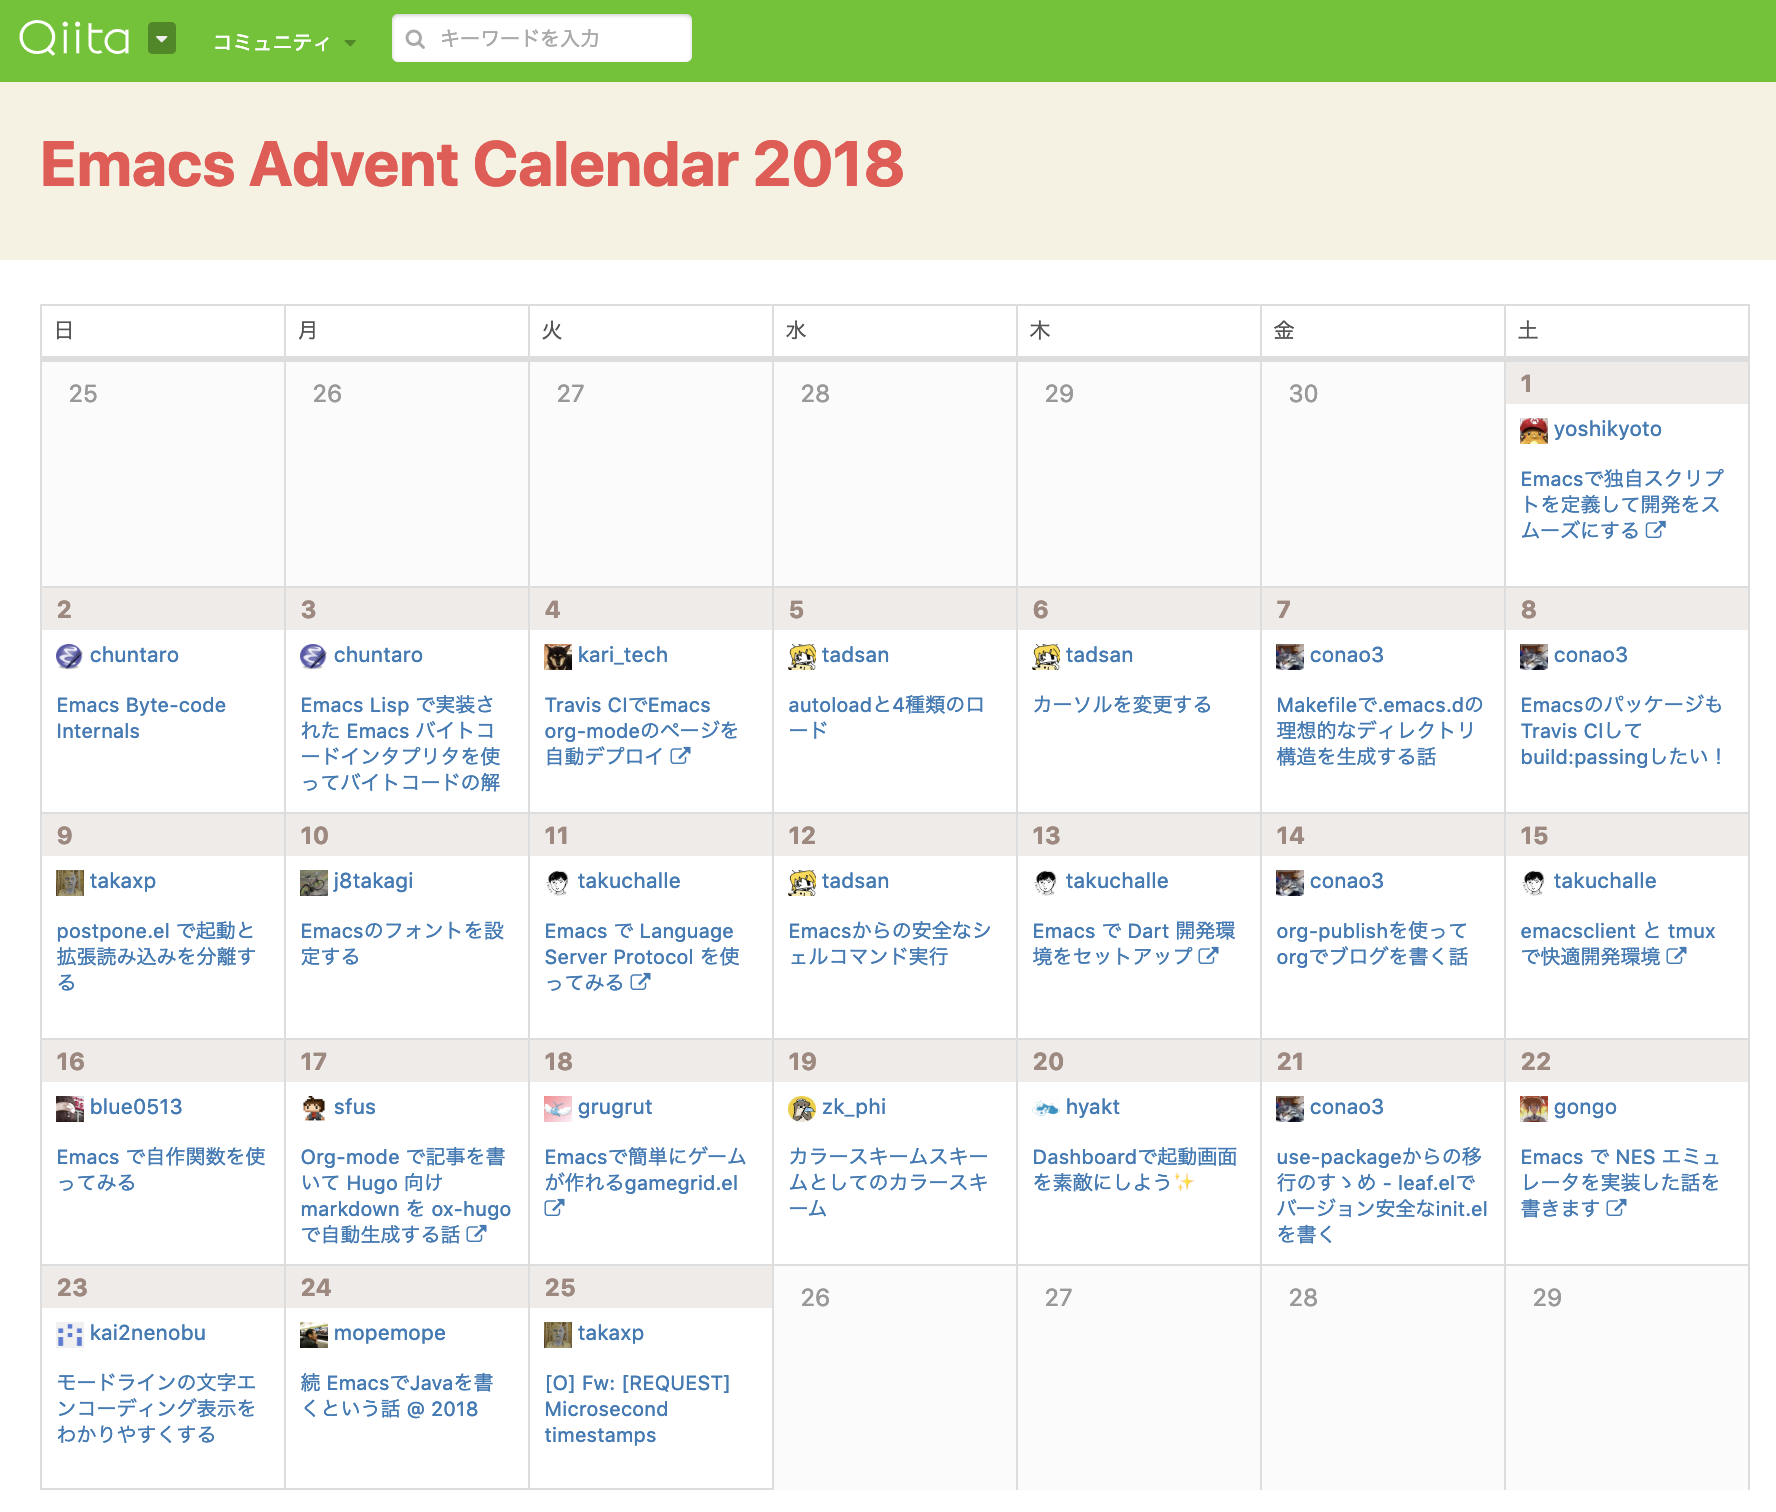 Emacs Advent Calendar 2018